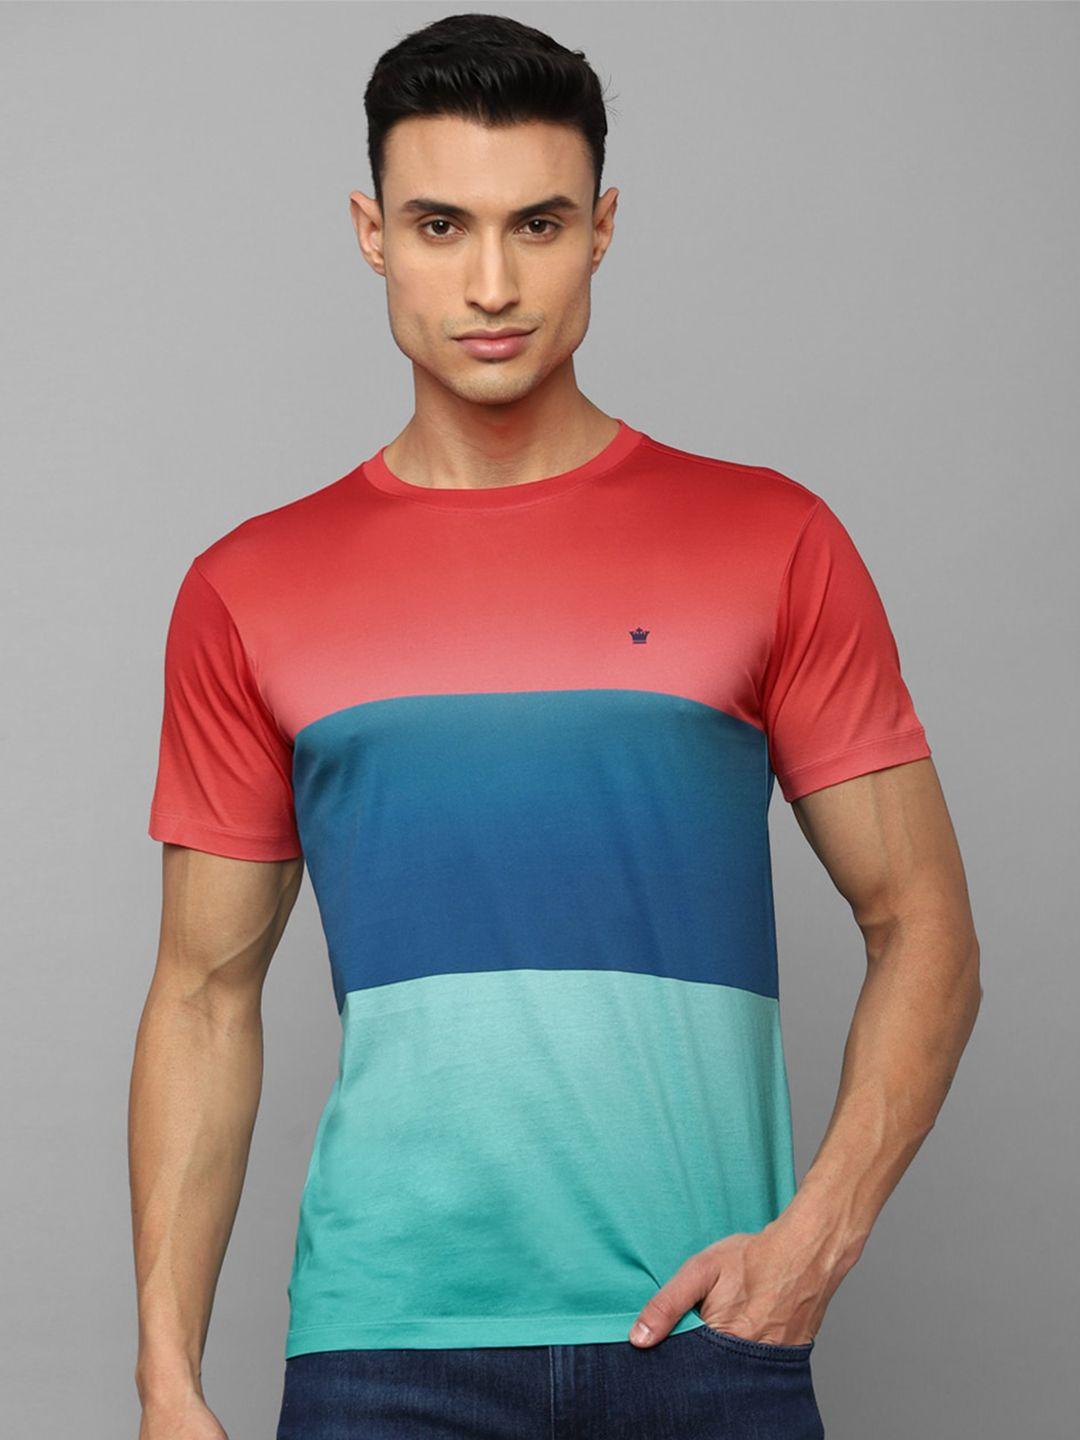 louis-philippe-sport-colourblocked-slim-fit-pure-cotton-t-shirt